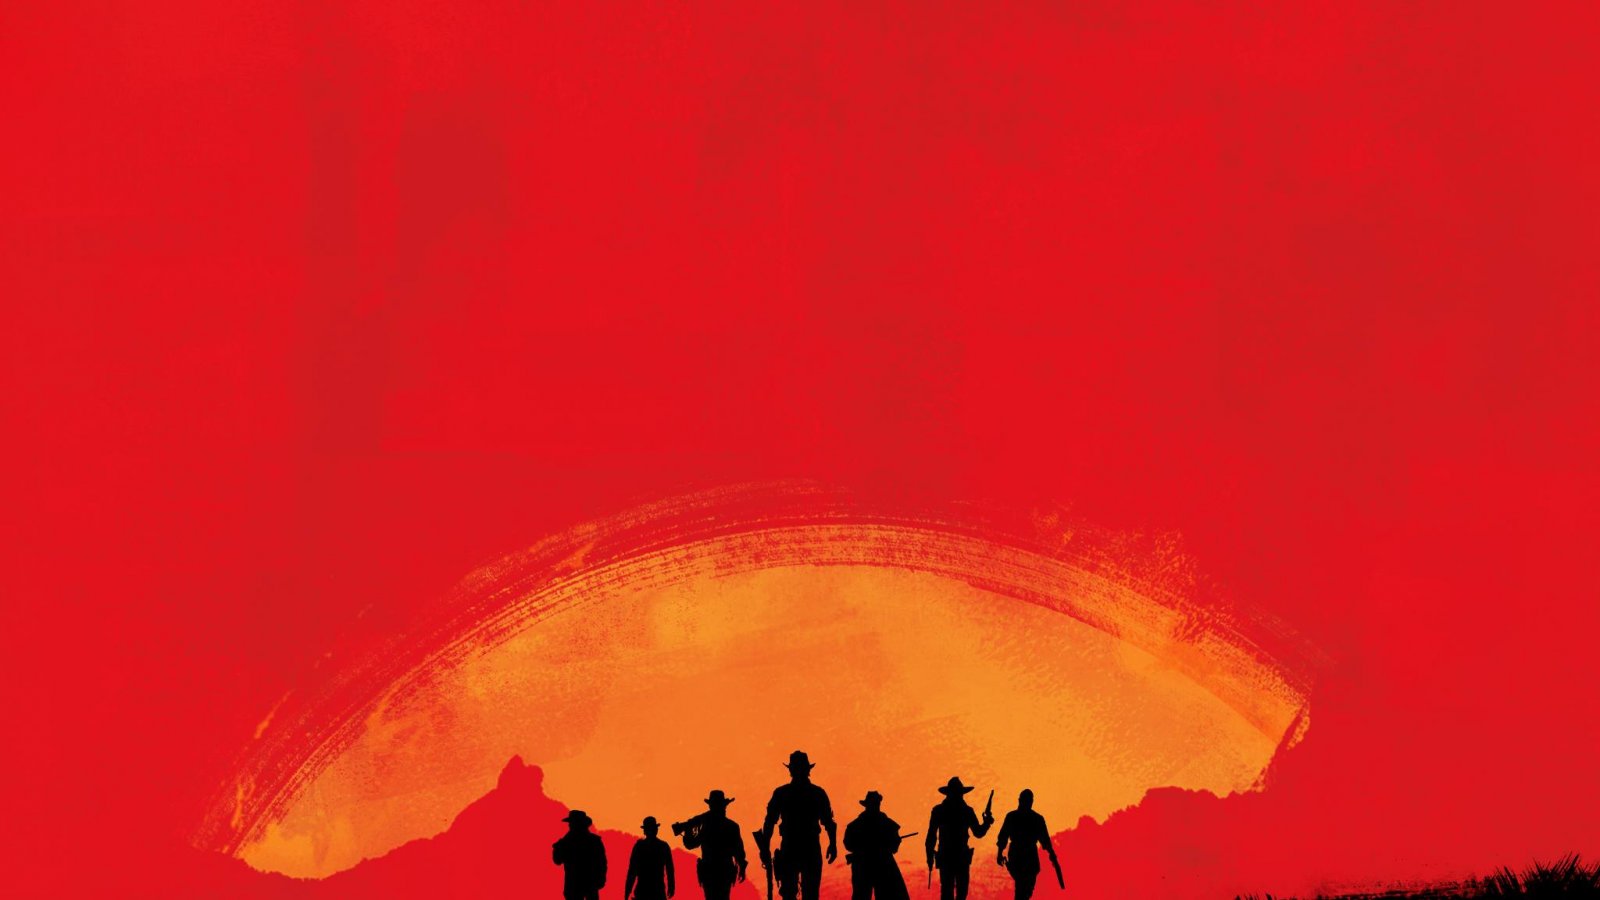 Red Dead Redemption 2 per PS5 e Xbox Series X|S emerge dai documenti Microsoft sul Game Pass